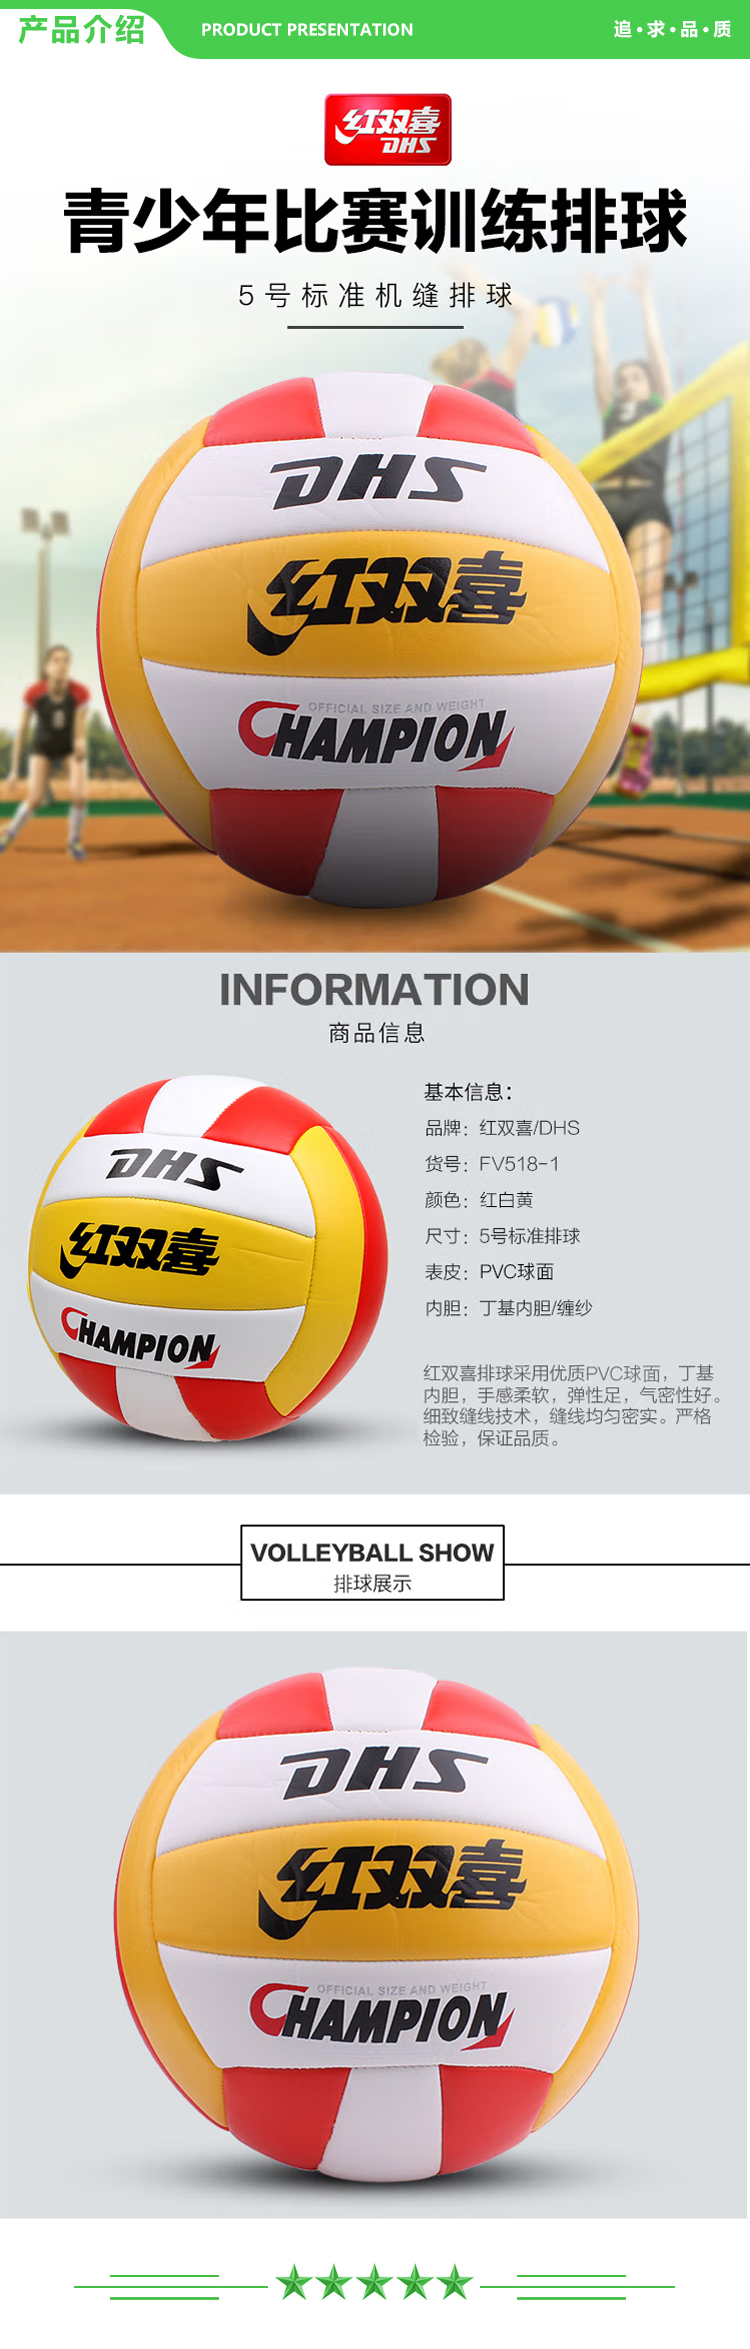 红双喜 DHS FV518-1 红白黄 5号排球成人学生专用中考初中生训练比赛教学 充气软式沙滩球  (2).jpg